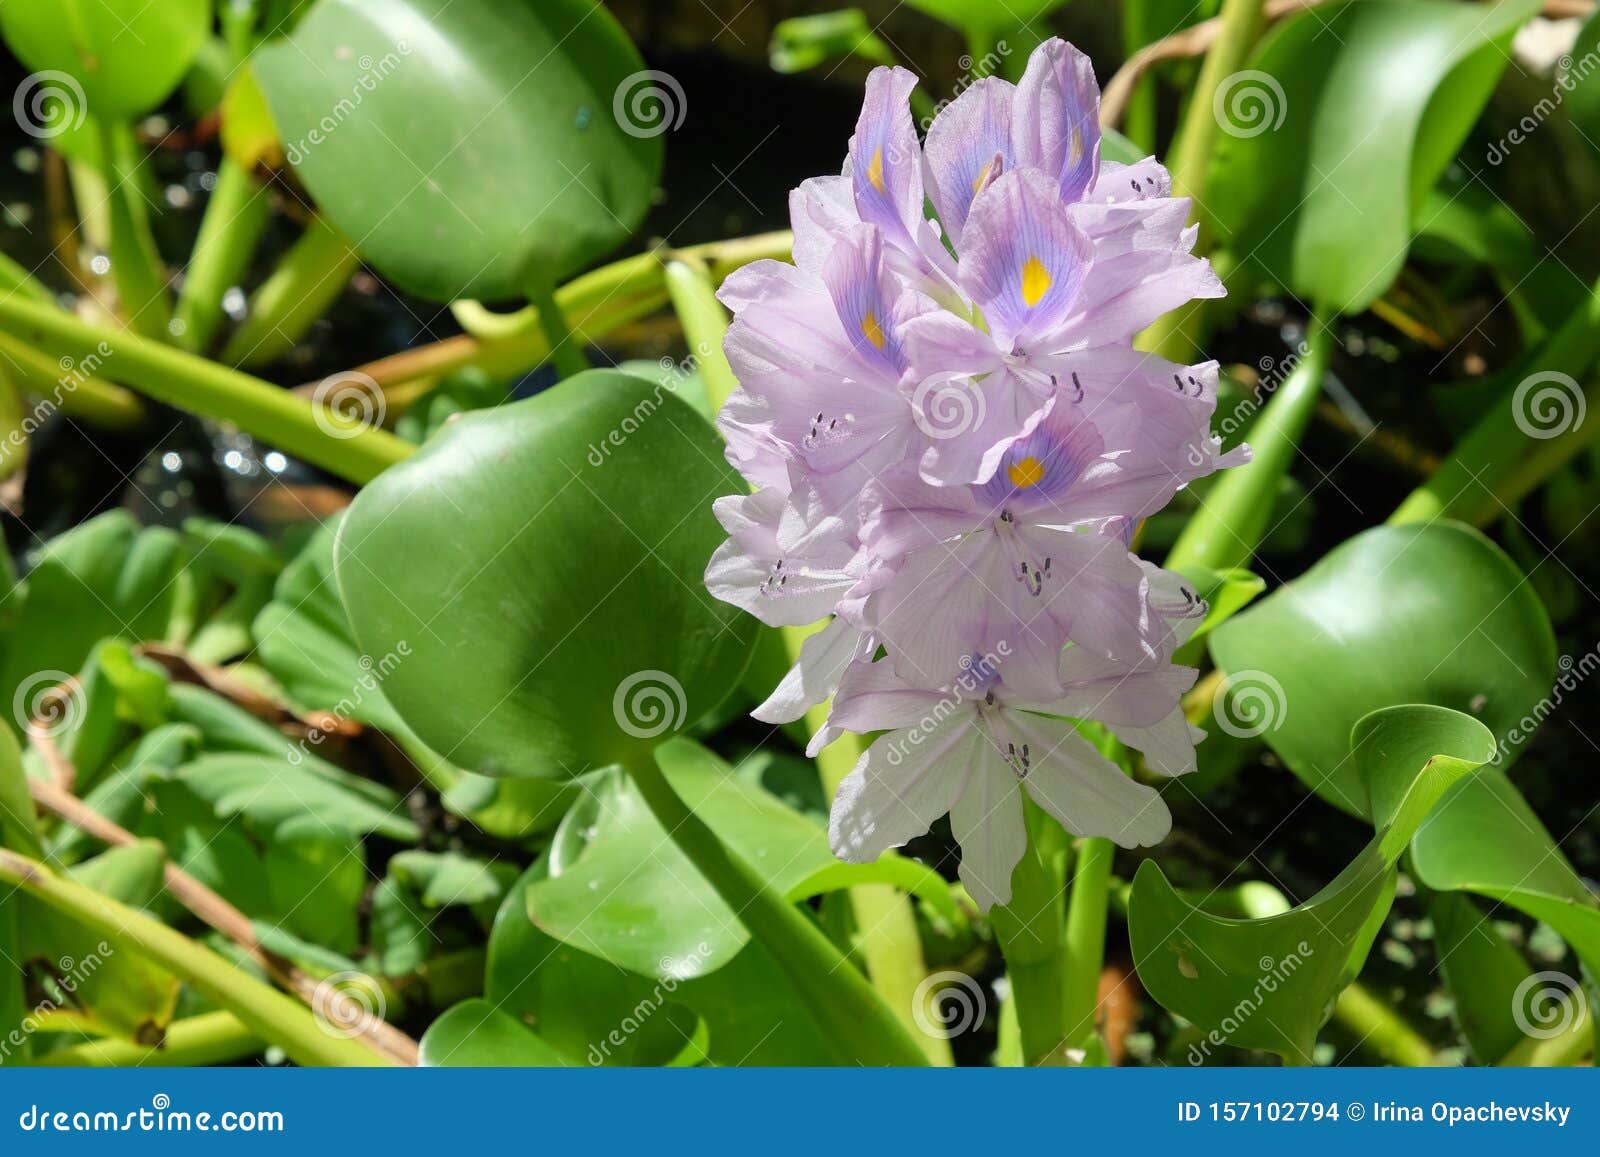 water hyacinth eichornia eichornia crassipes in an artificial pond